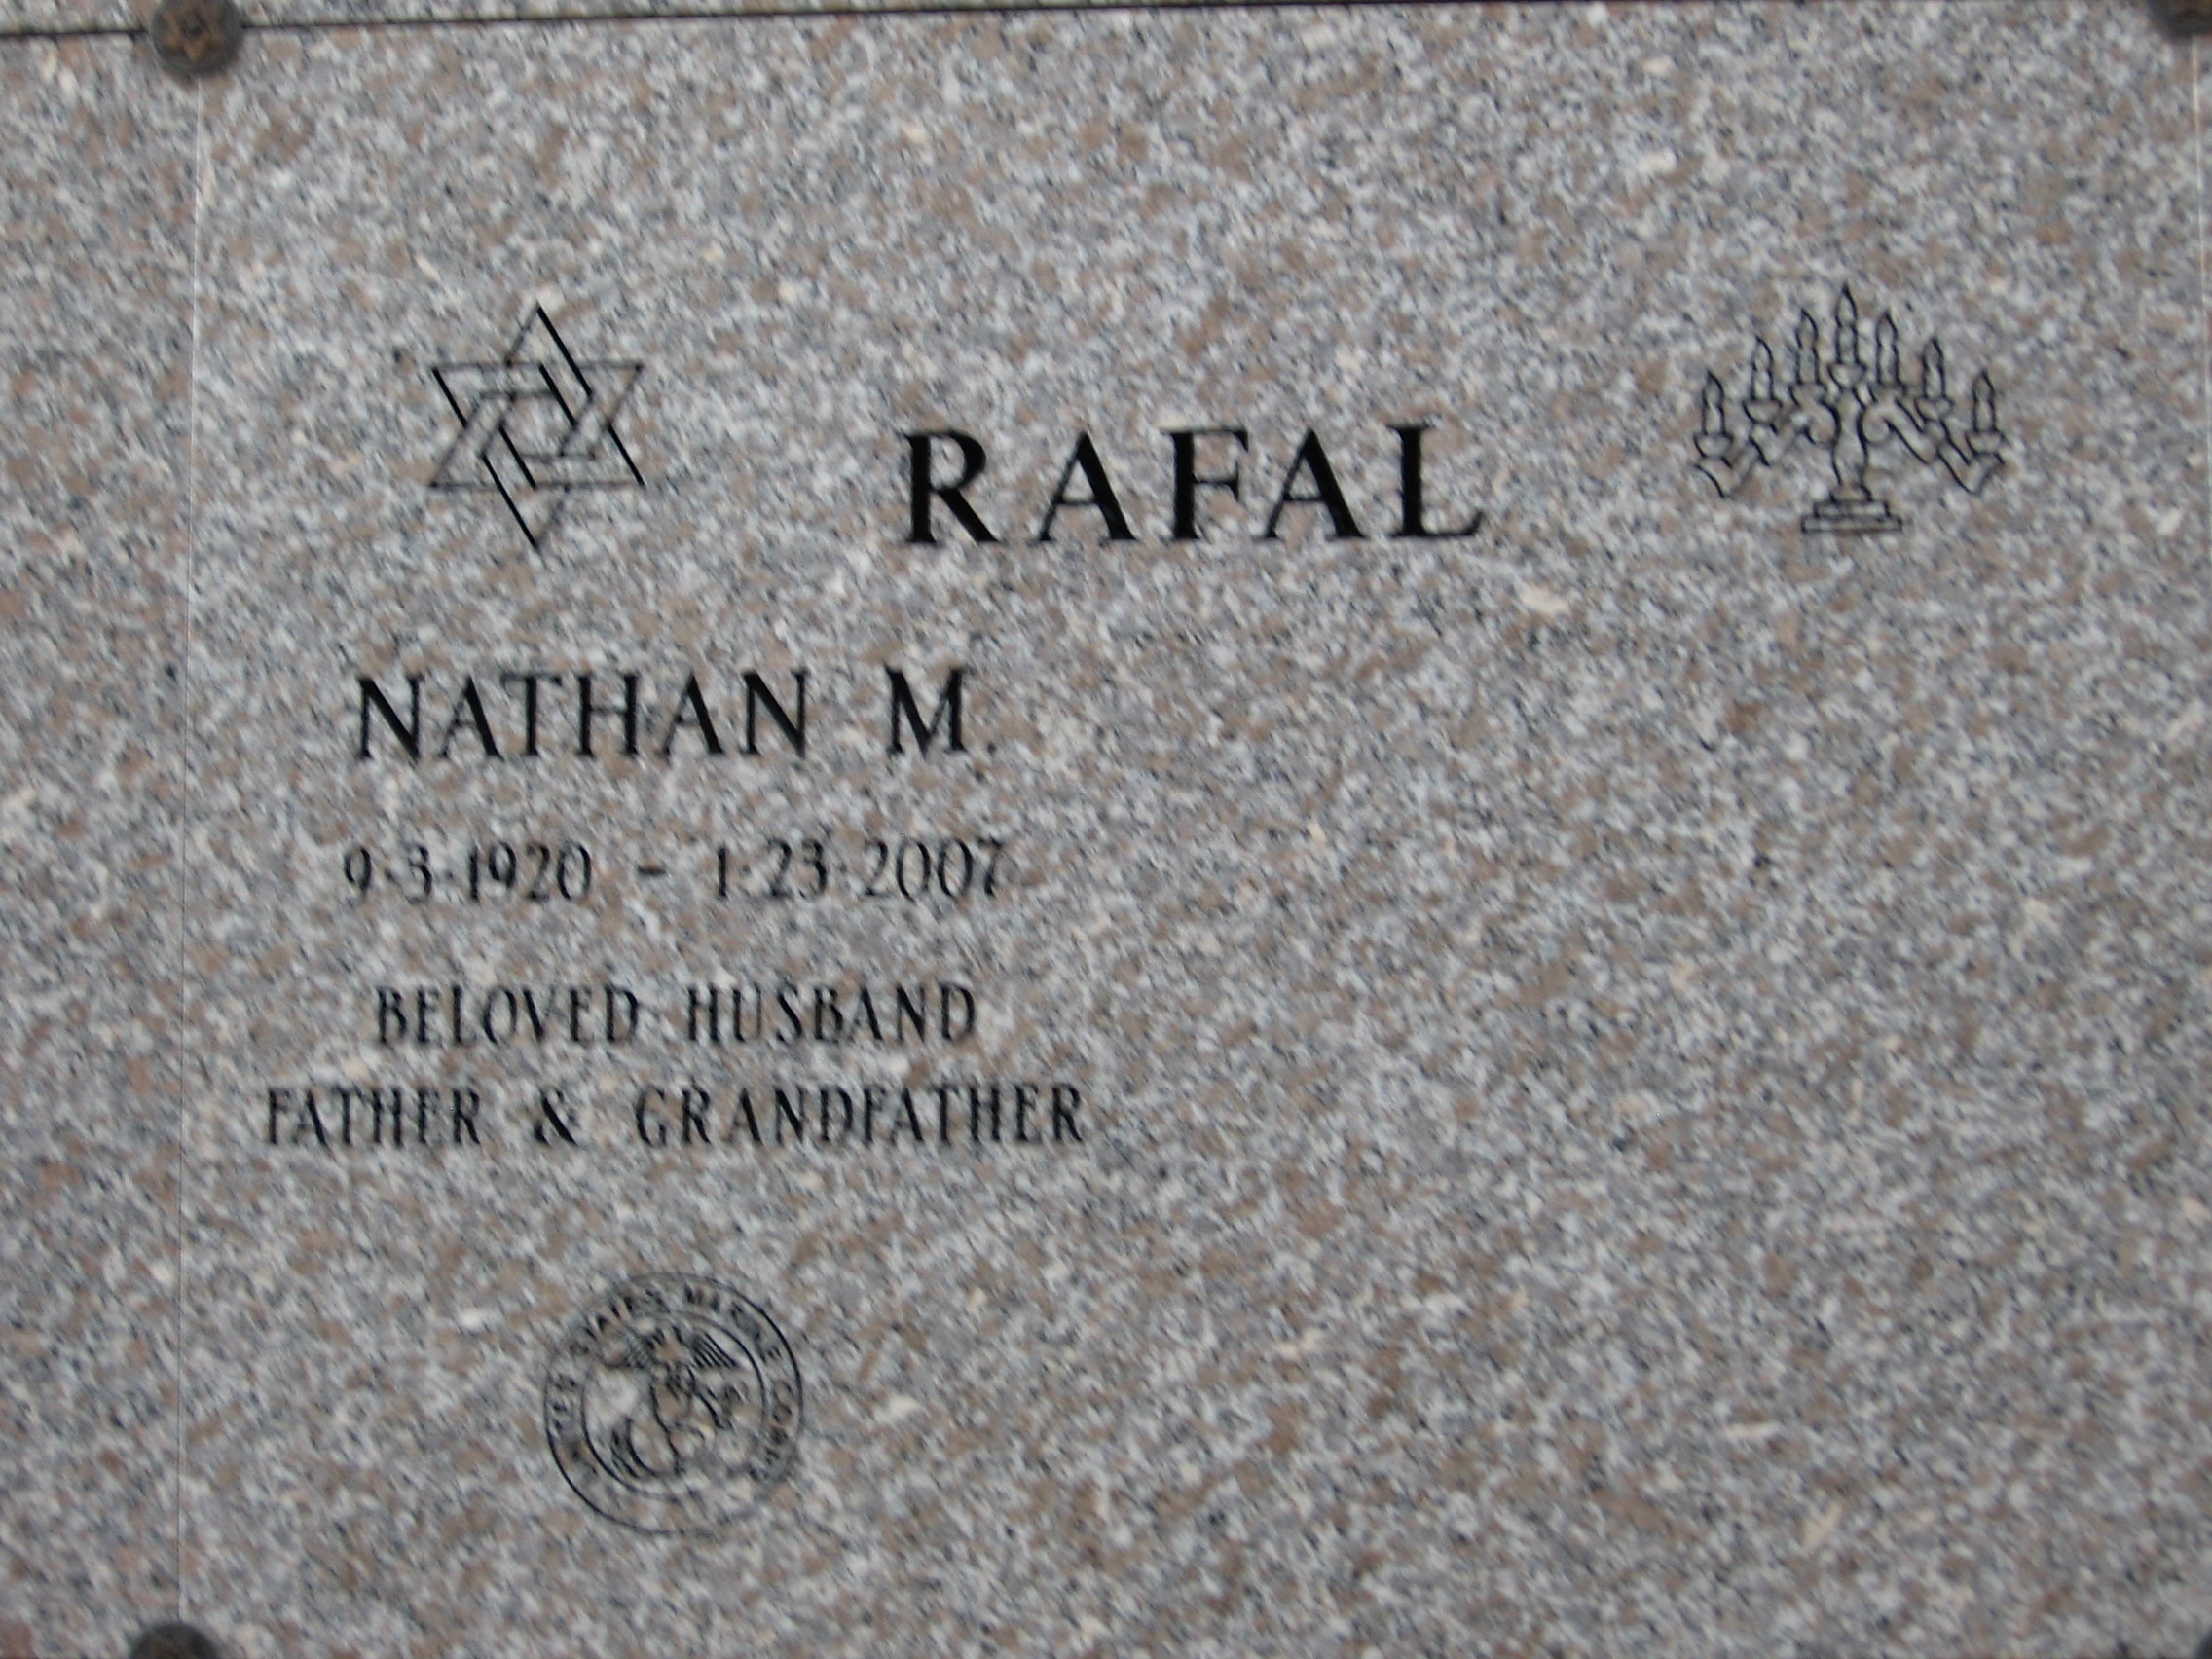 Nathan M Rafal